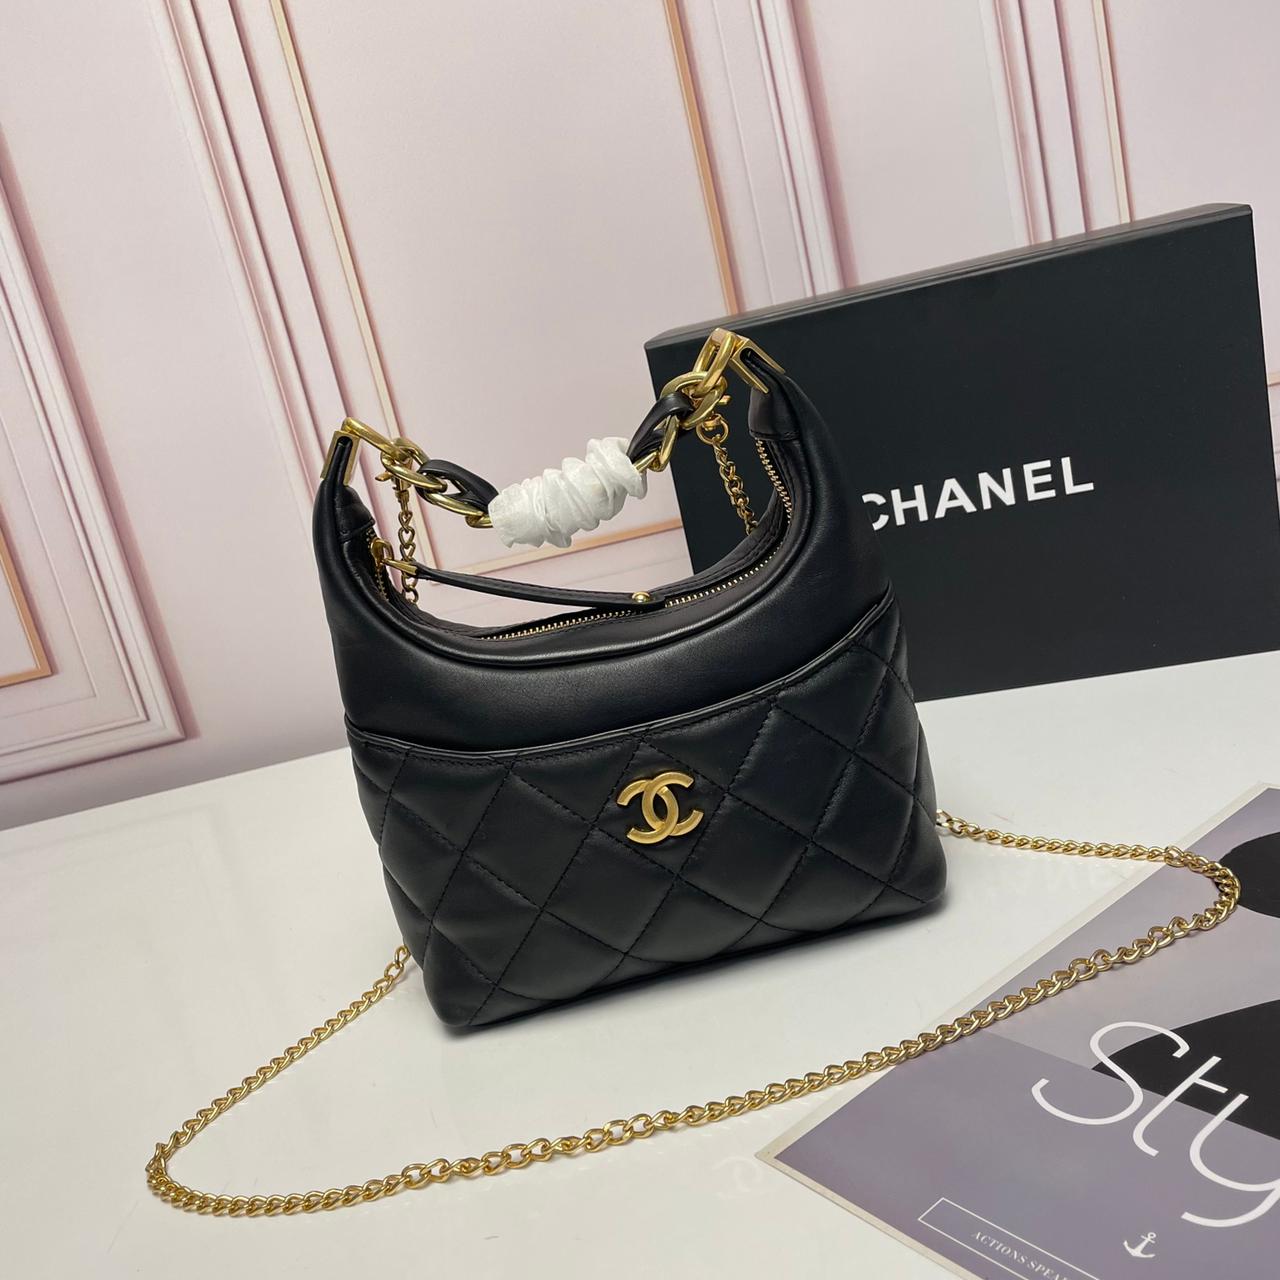 Chanel Mini Hobo leather Bag